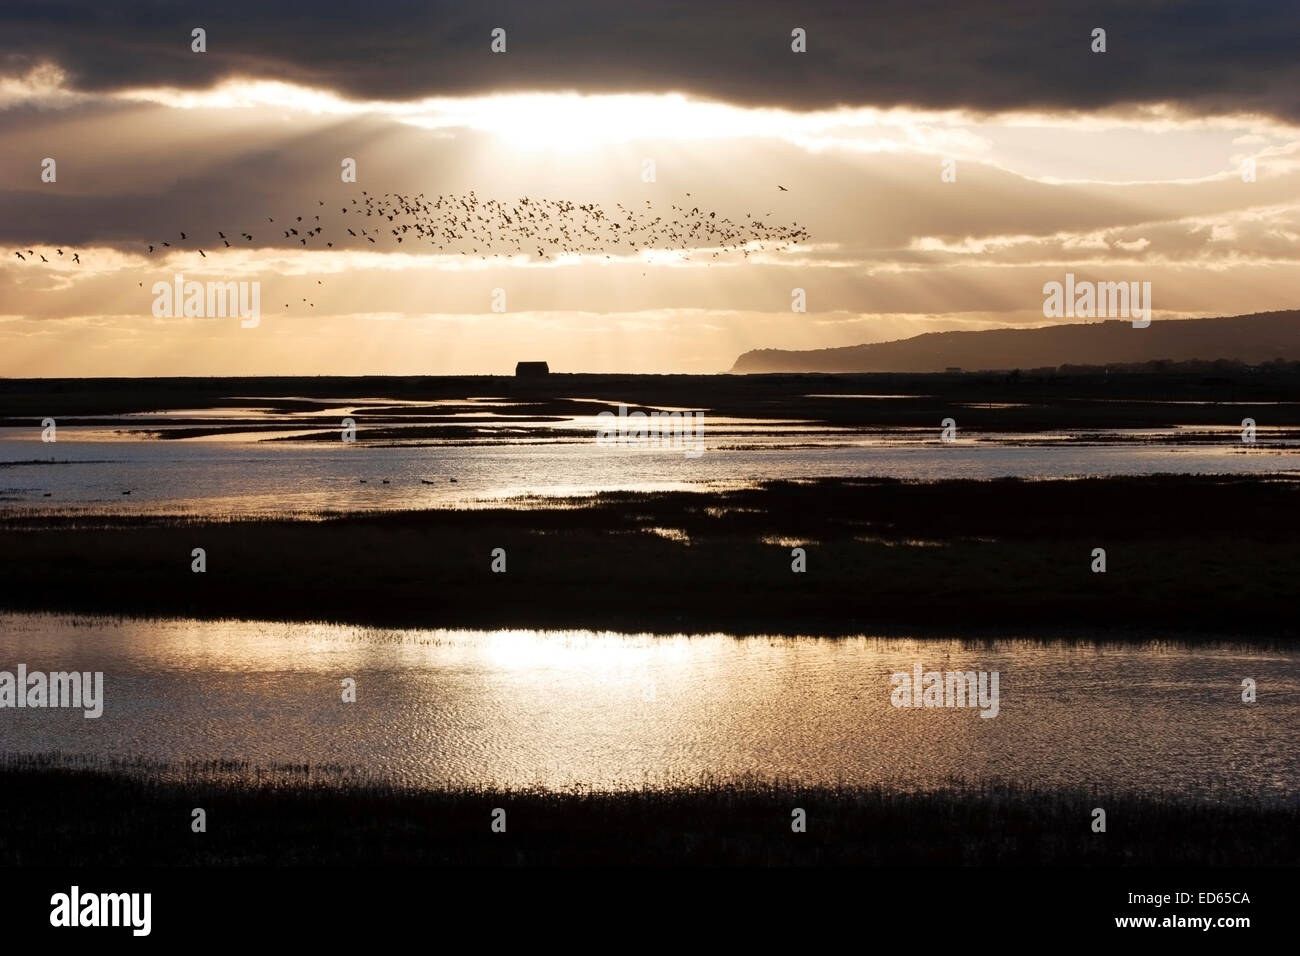 La reserva natural de Rye Harbour, una noche de invierno, con la bandada de pájaros y Fairlight acantilados en la distancia Foto de stock